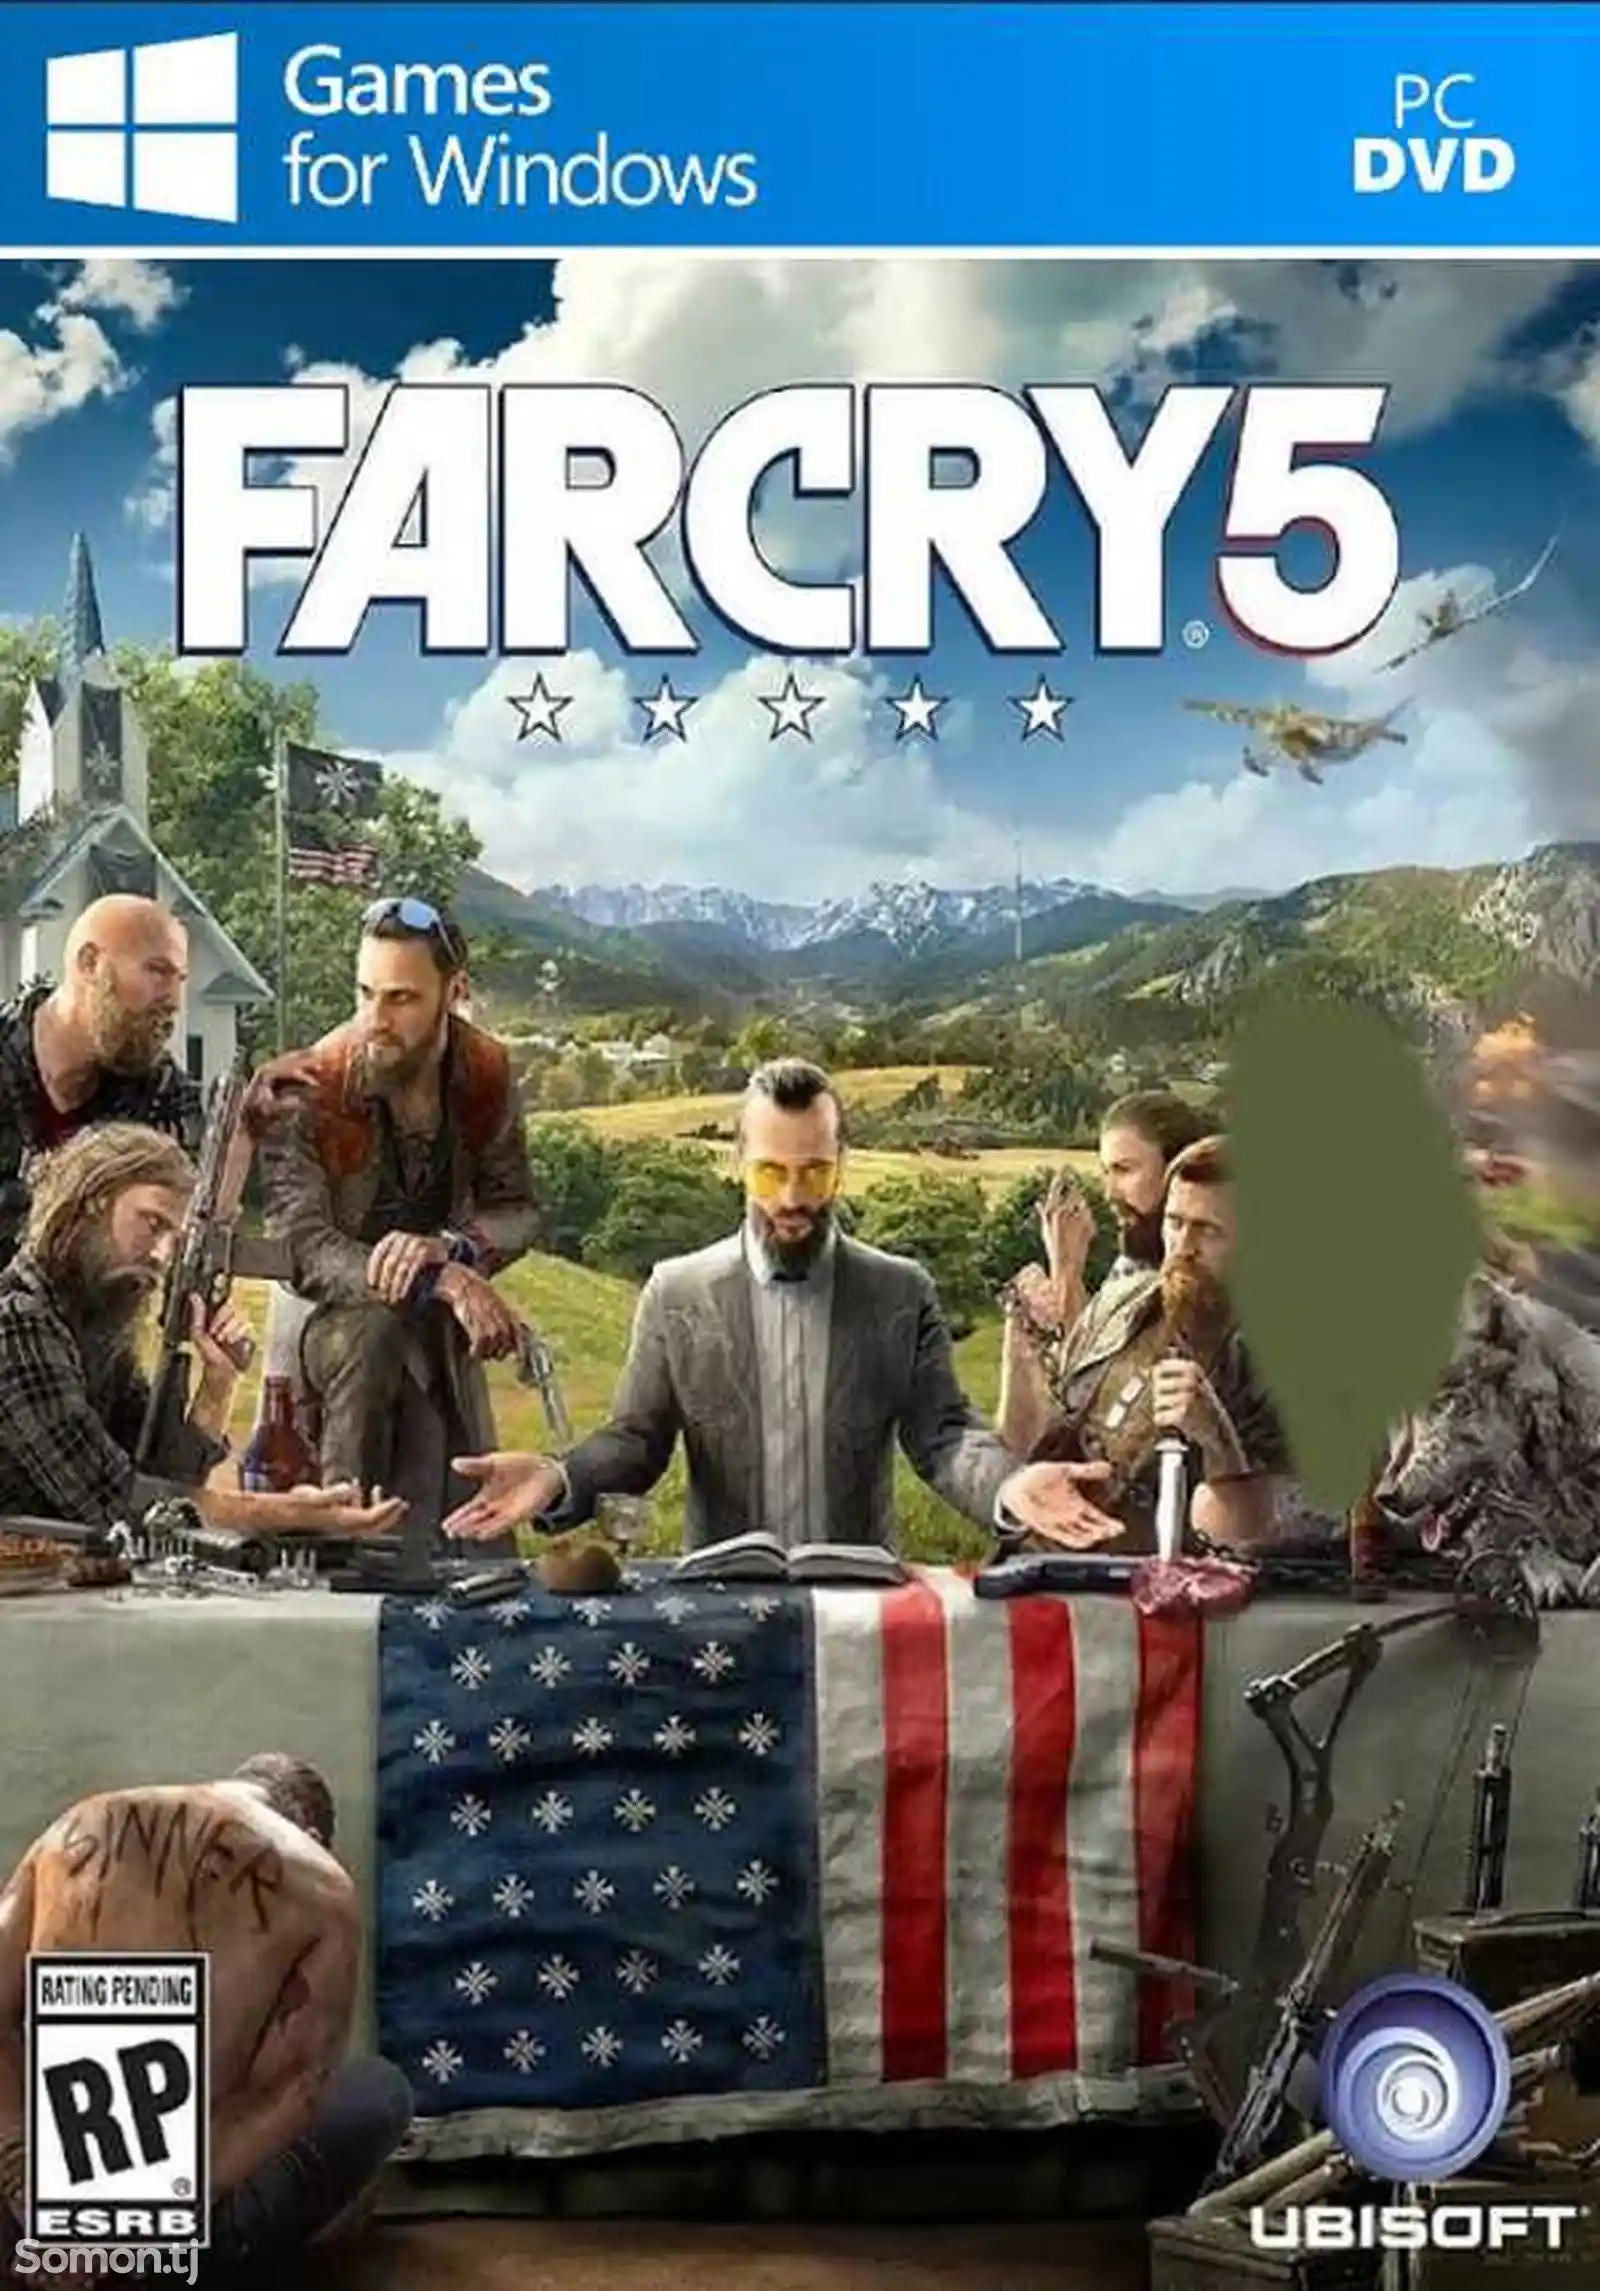 Игра Far cry 5 для компьютера-пк-pc-1